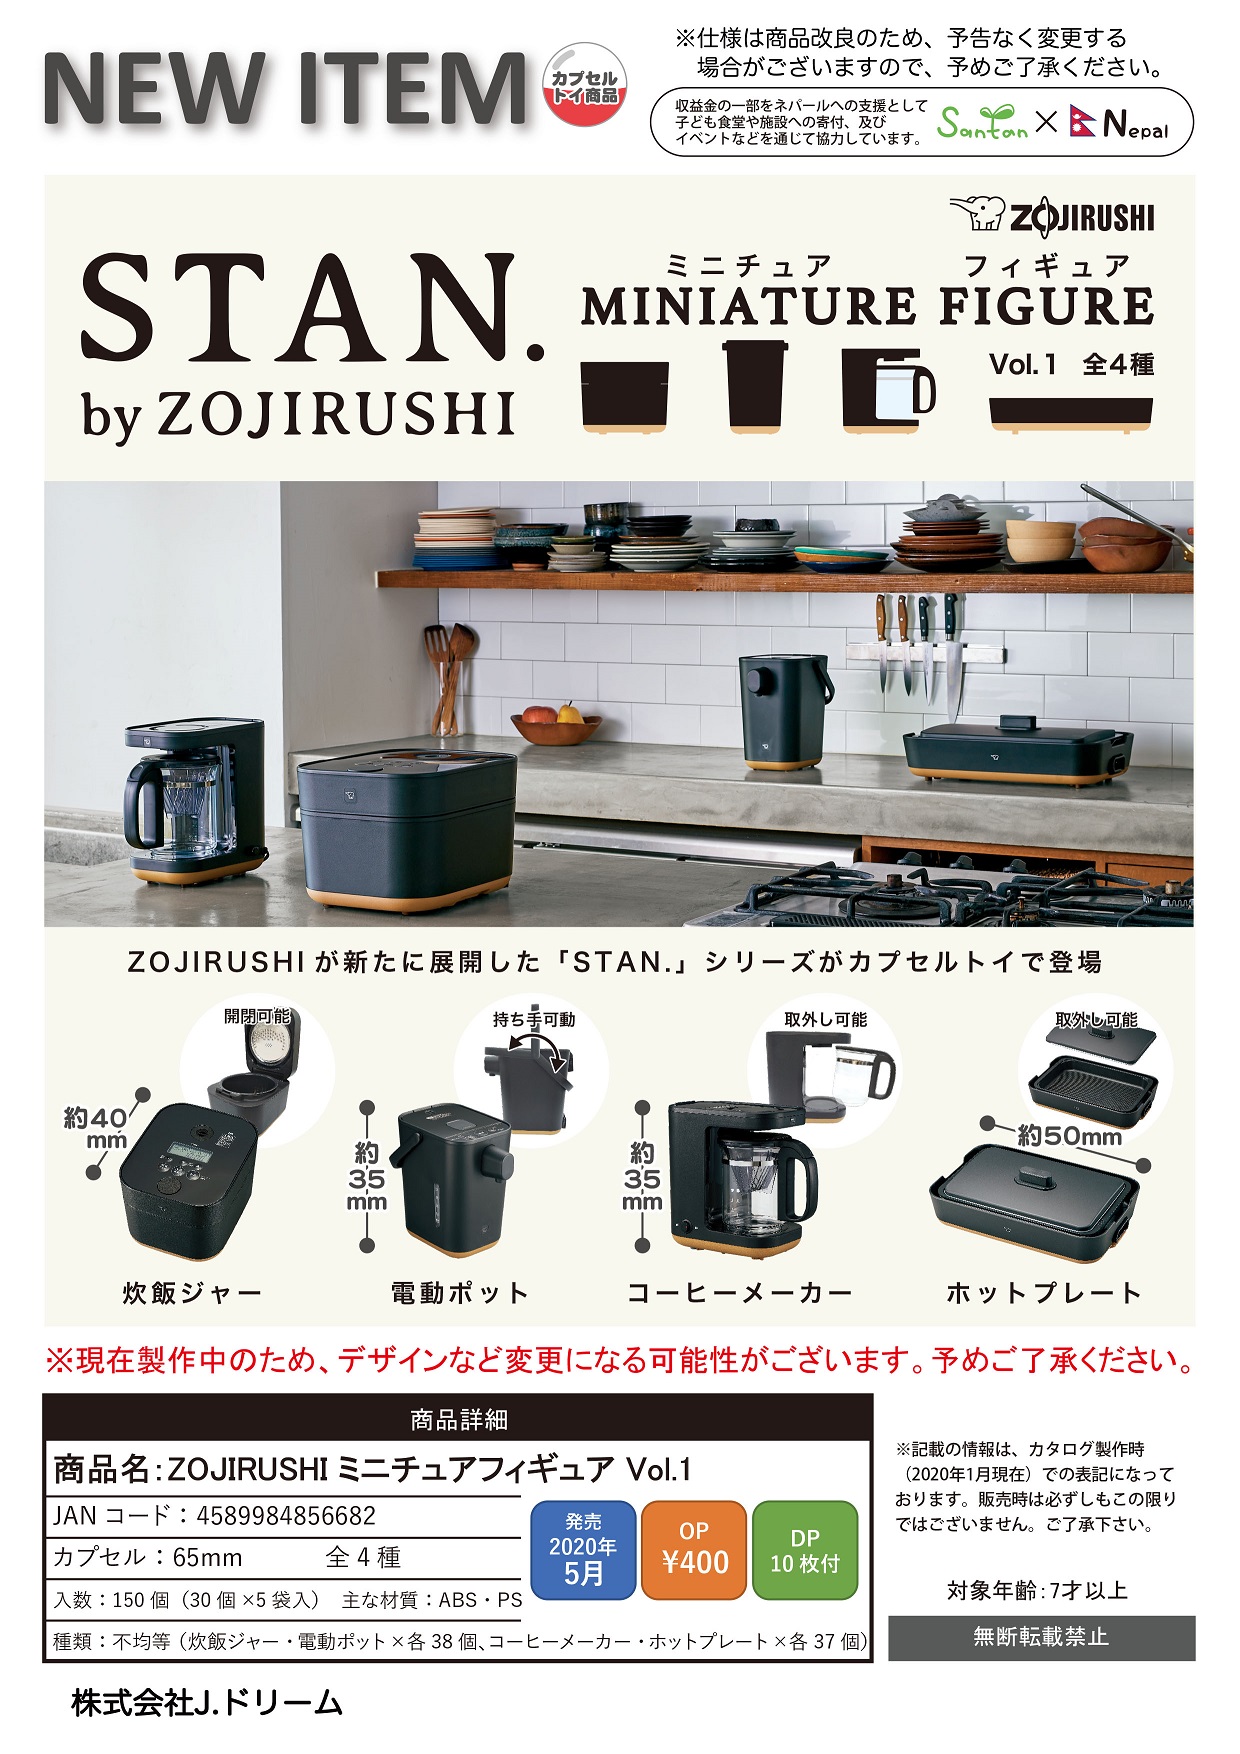 400日元扭蛋 象印 迷你仿真厨房用具 第1弹 全5种 (1袋30个) 856682